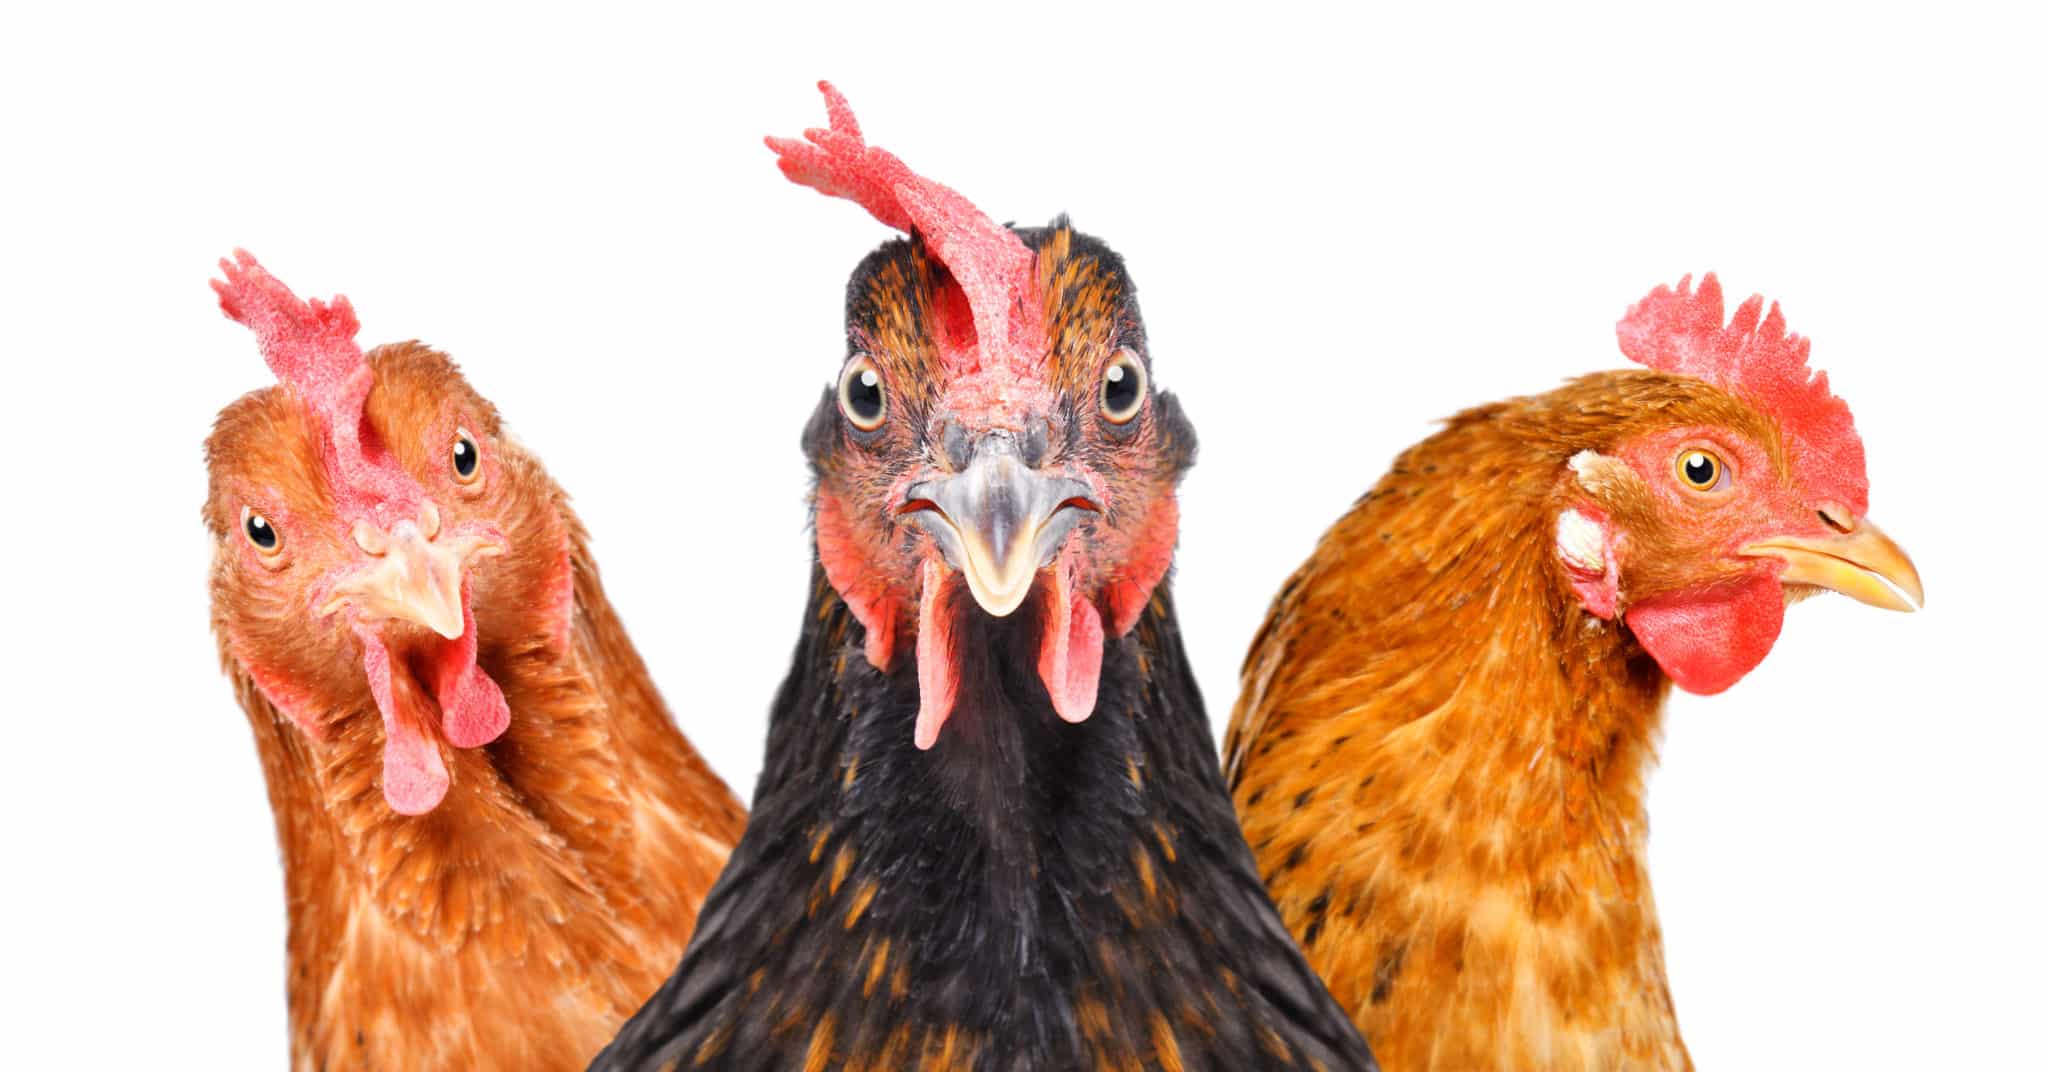 Lire la suite à propos de l’article Nuisances sonores : quand les poules caquettent !